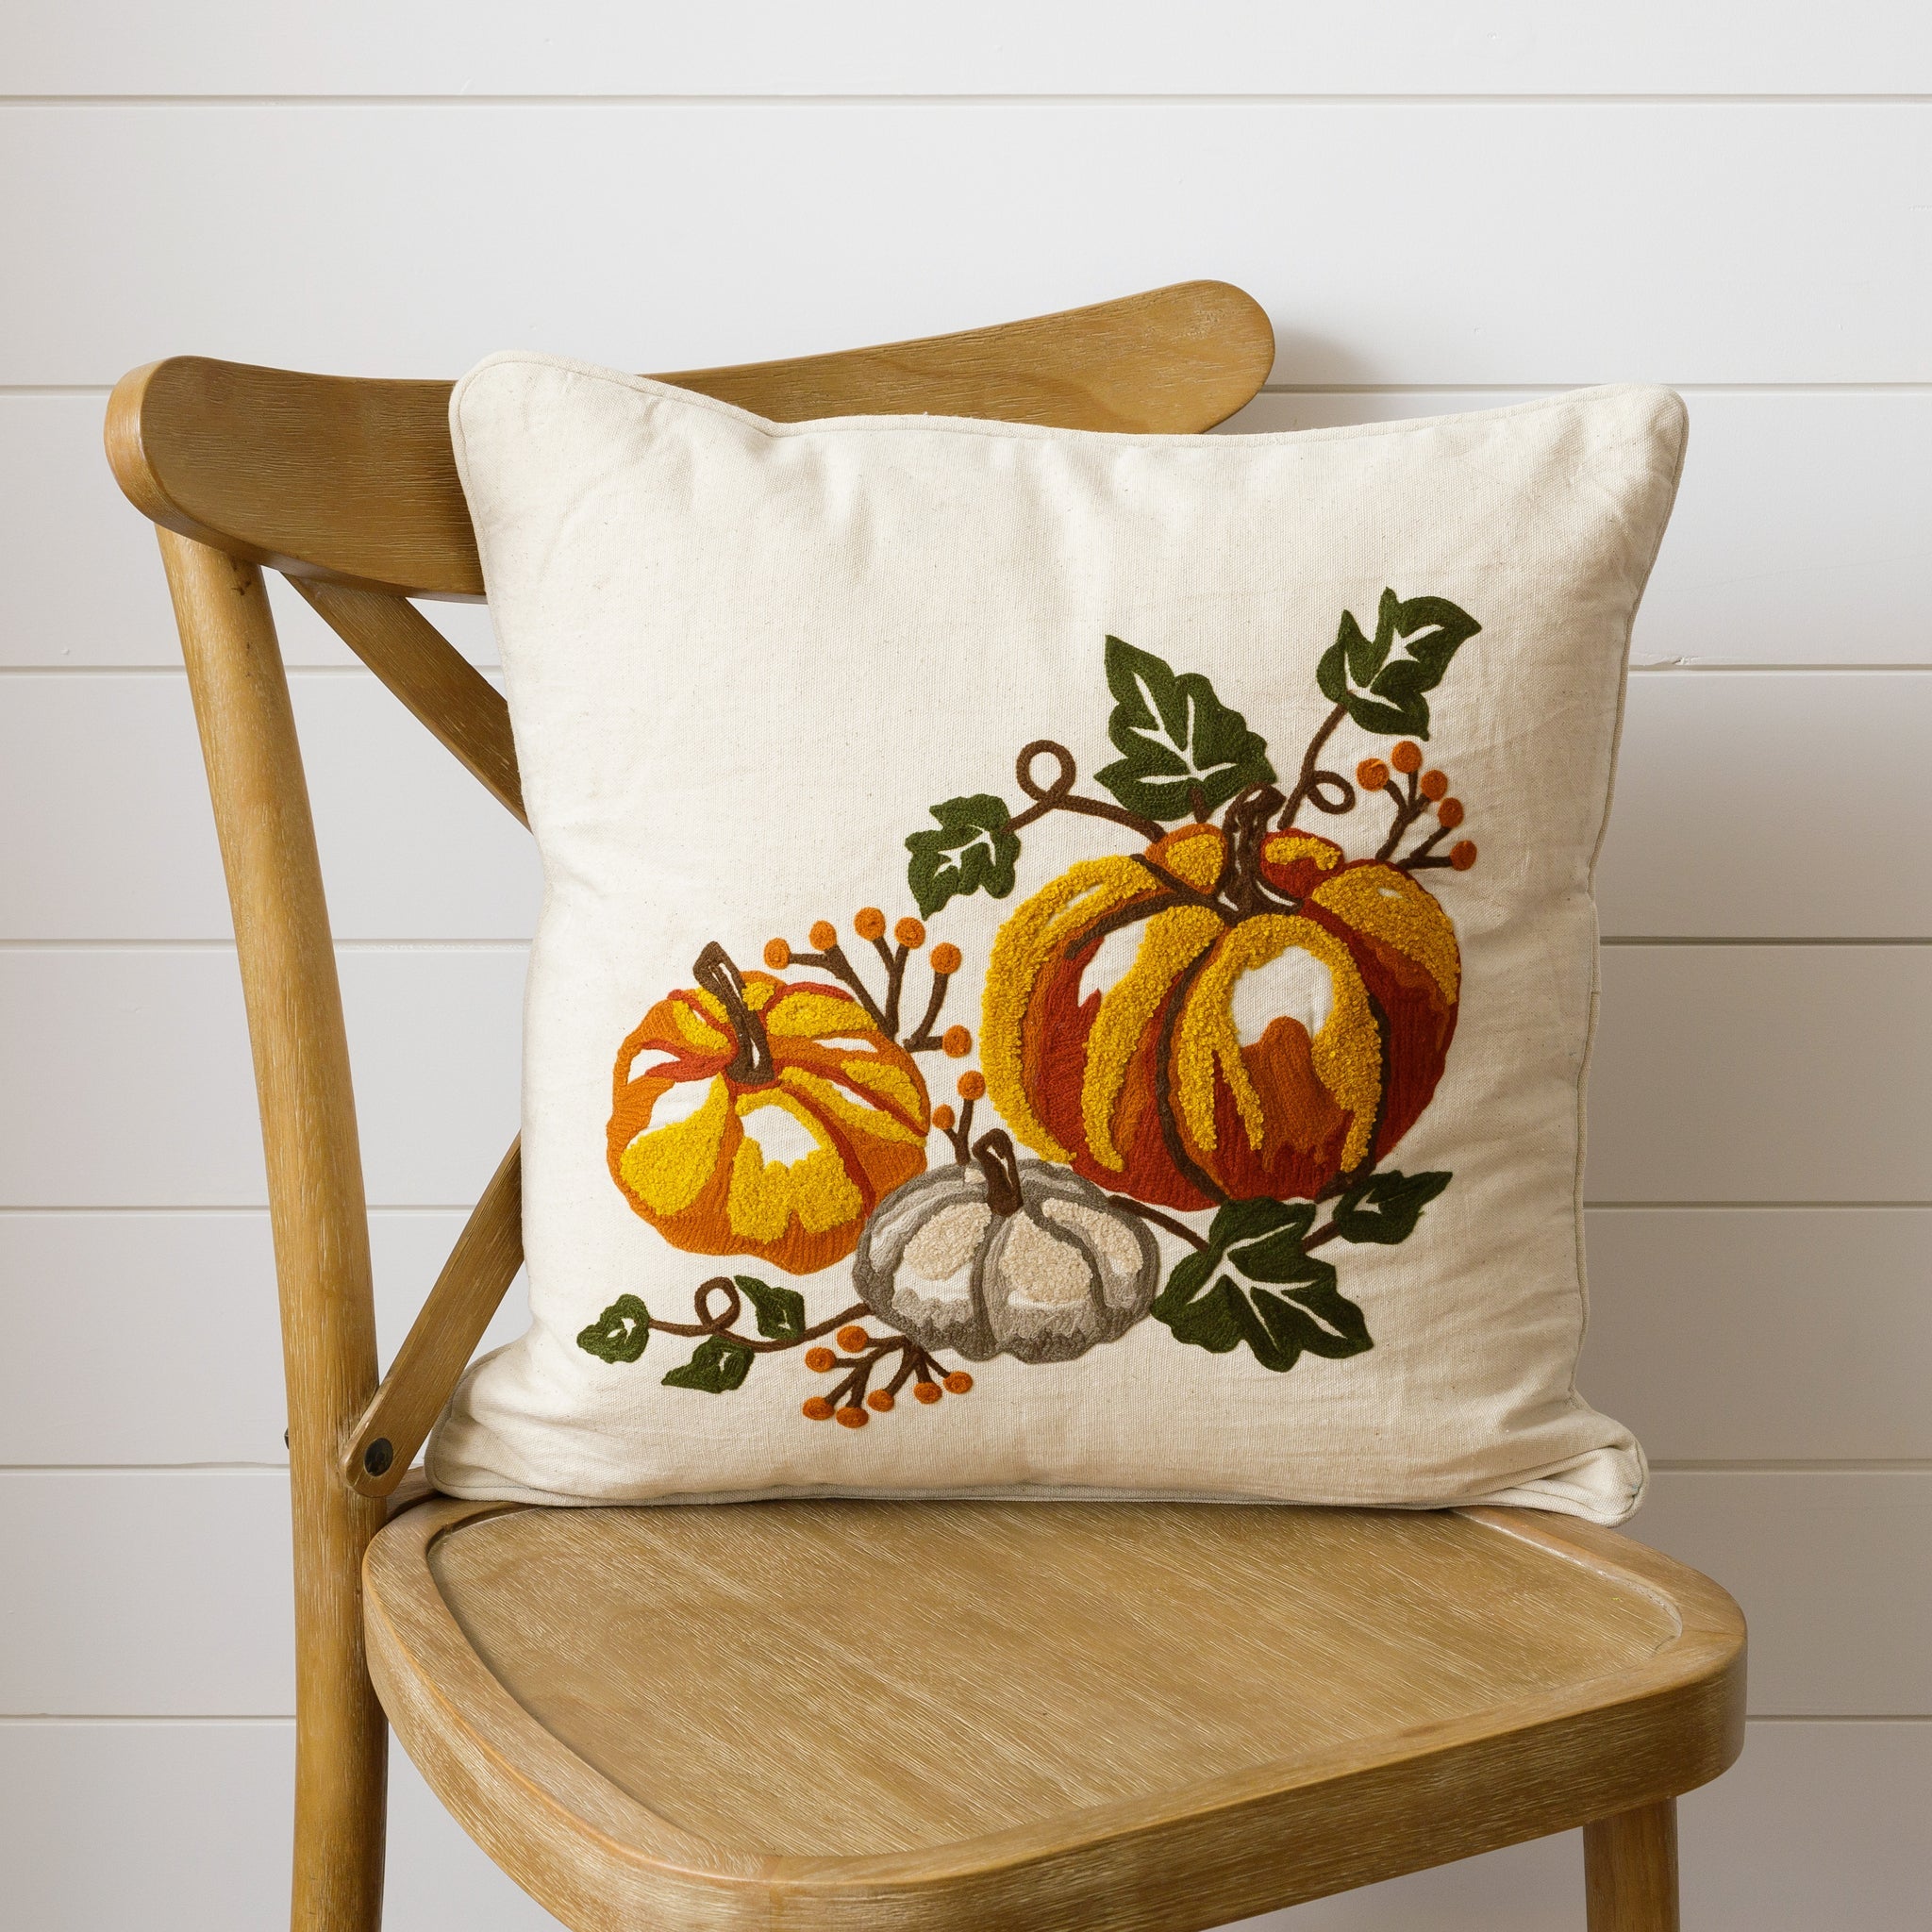 Embroidered Pumpkin Pillow - Vintage Pumpkin